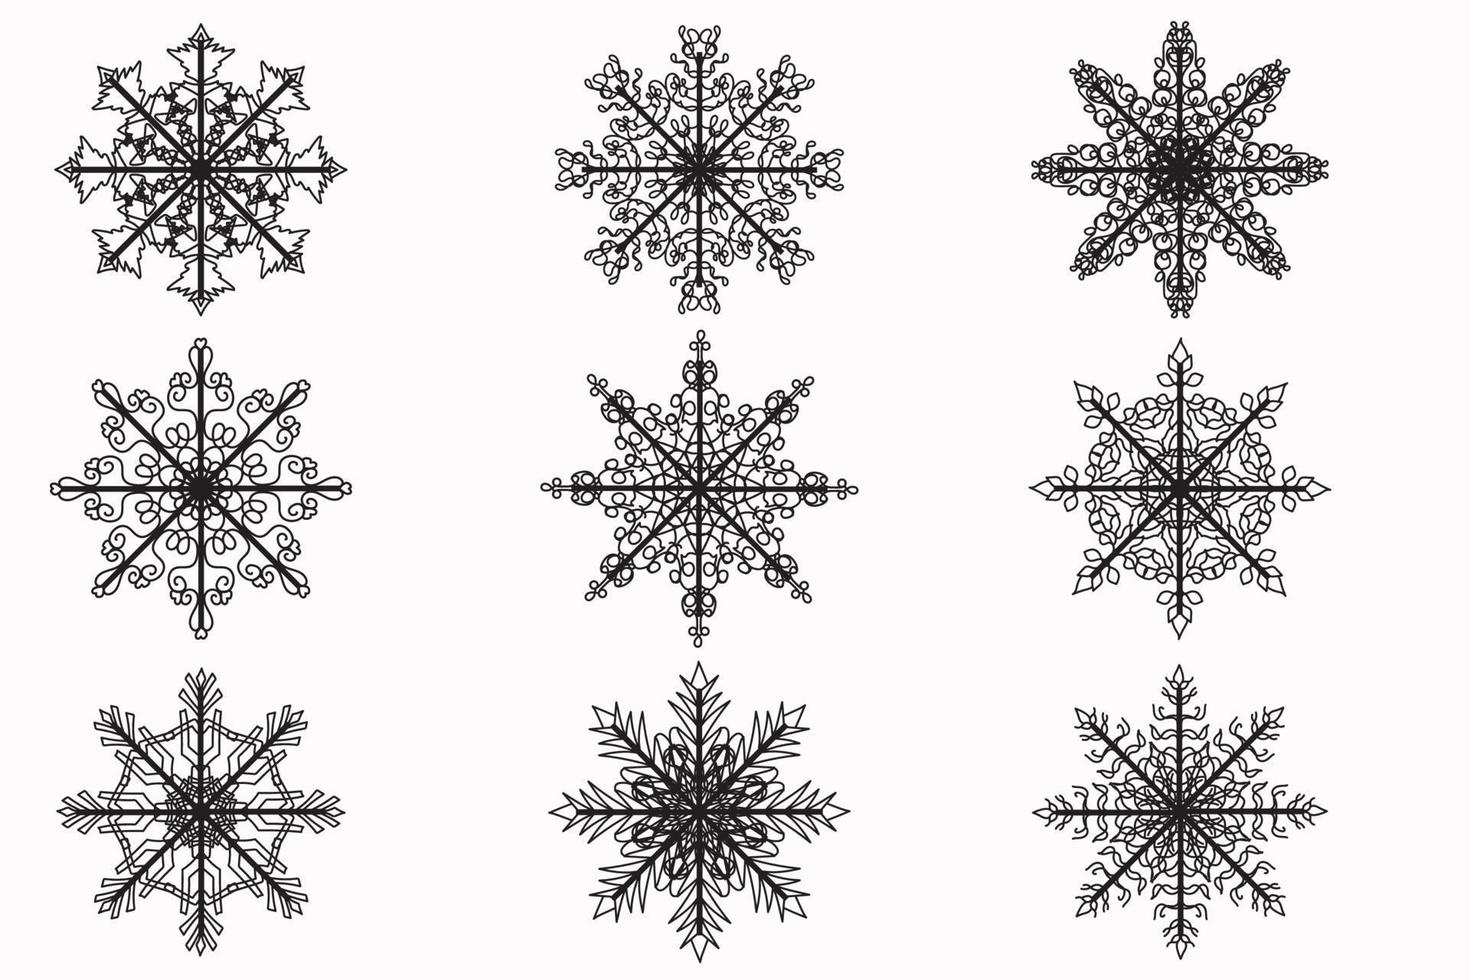 de bild visar olika snöflingor målad i svart översikt, avsedd för ny år, vykort, Kläder och tyg utskrift och Övrig tillfällen vektor